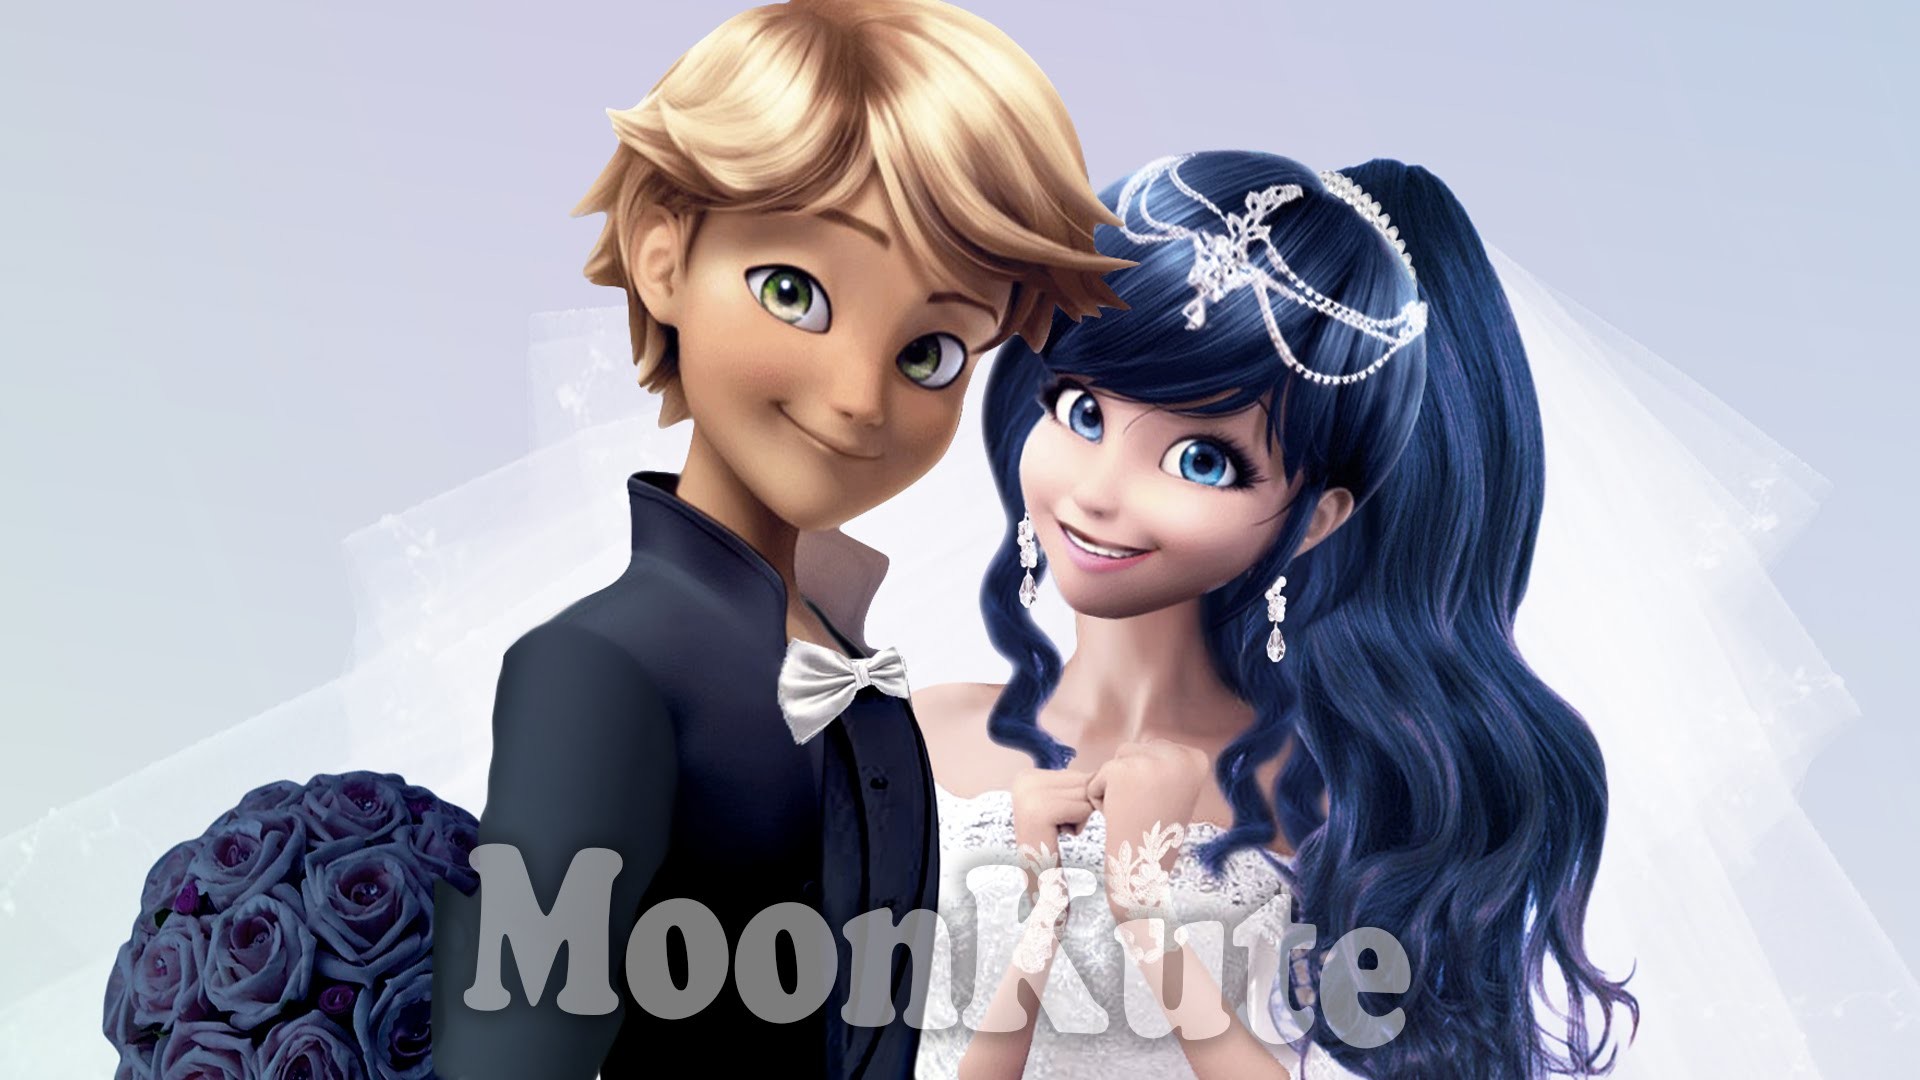 WEDDING â¥ Marienette and Adrien â¥ Miraculous Ladybug Wedding – MoonKute –  YouTube